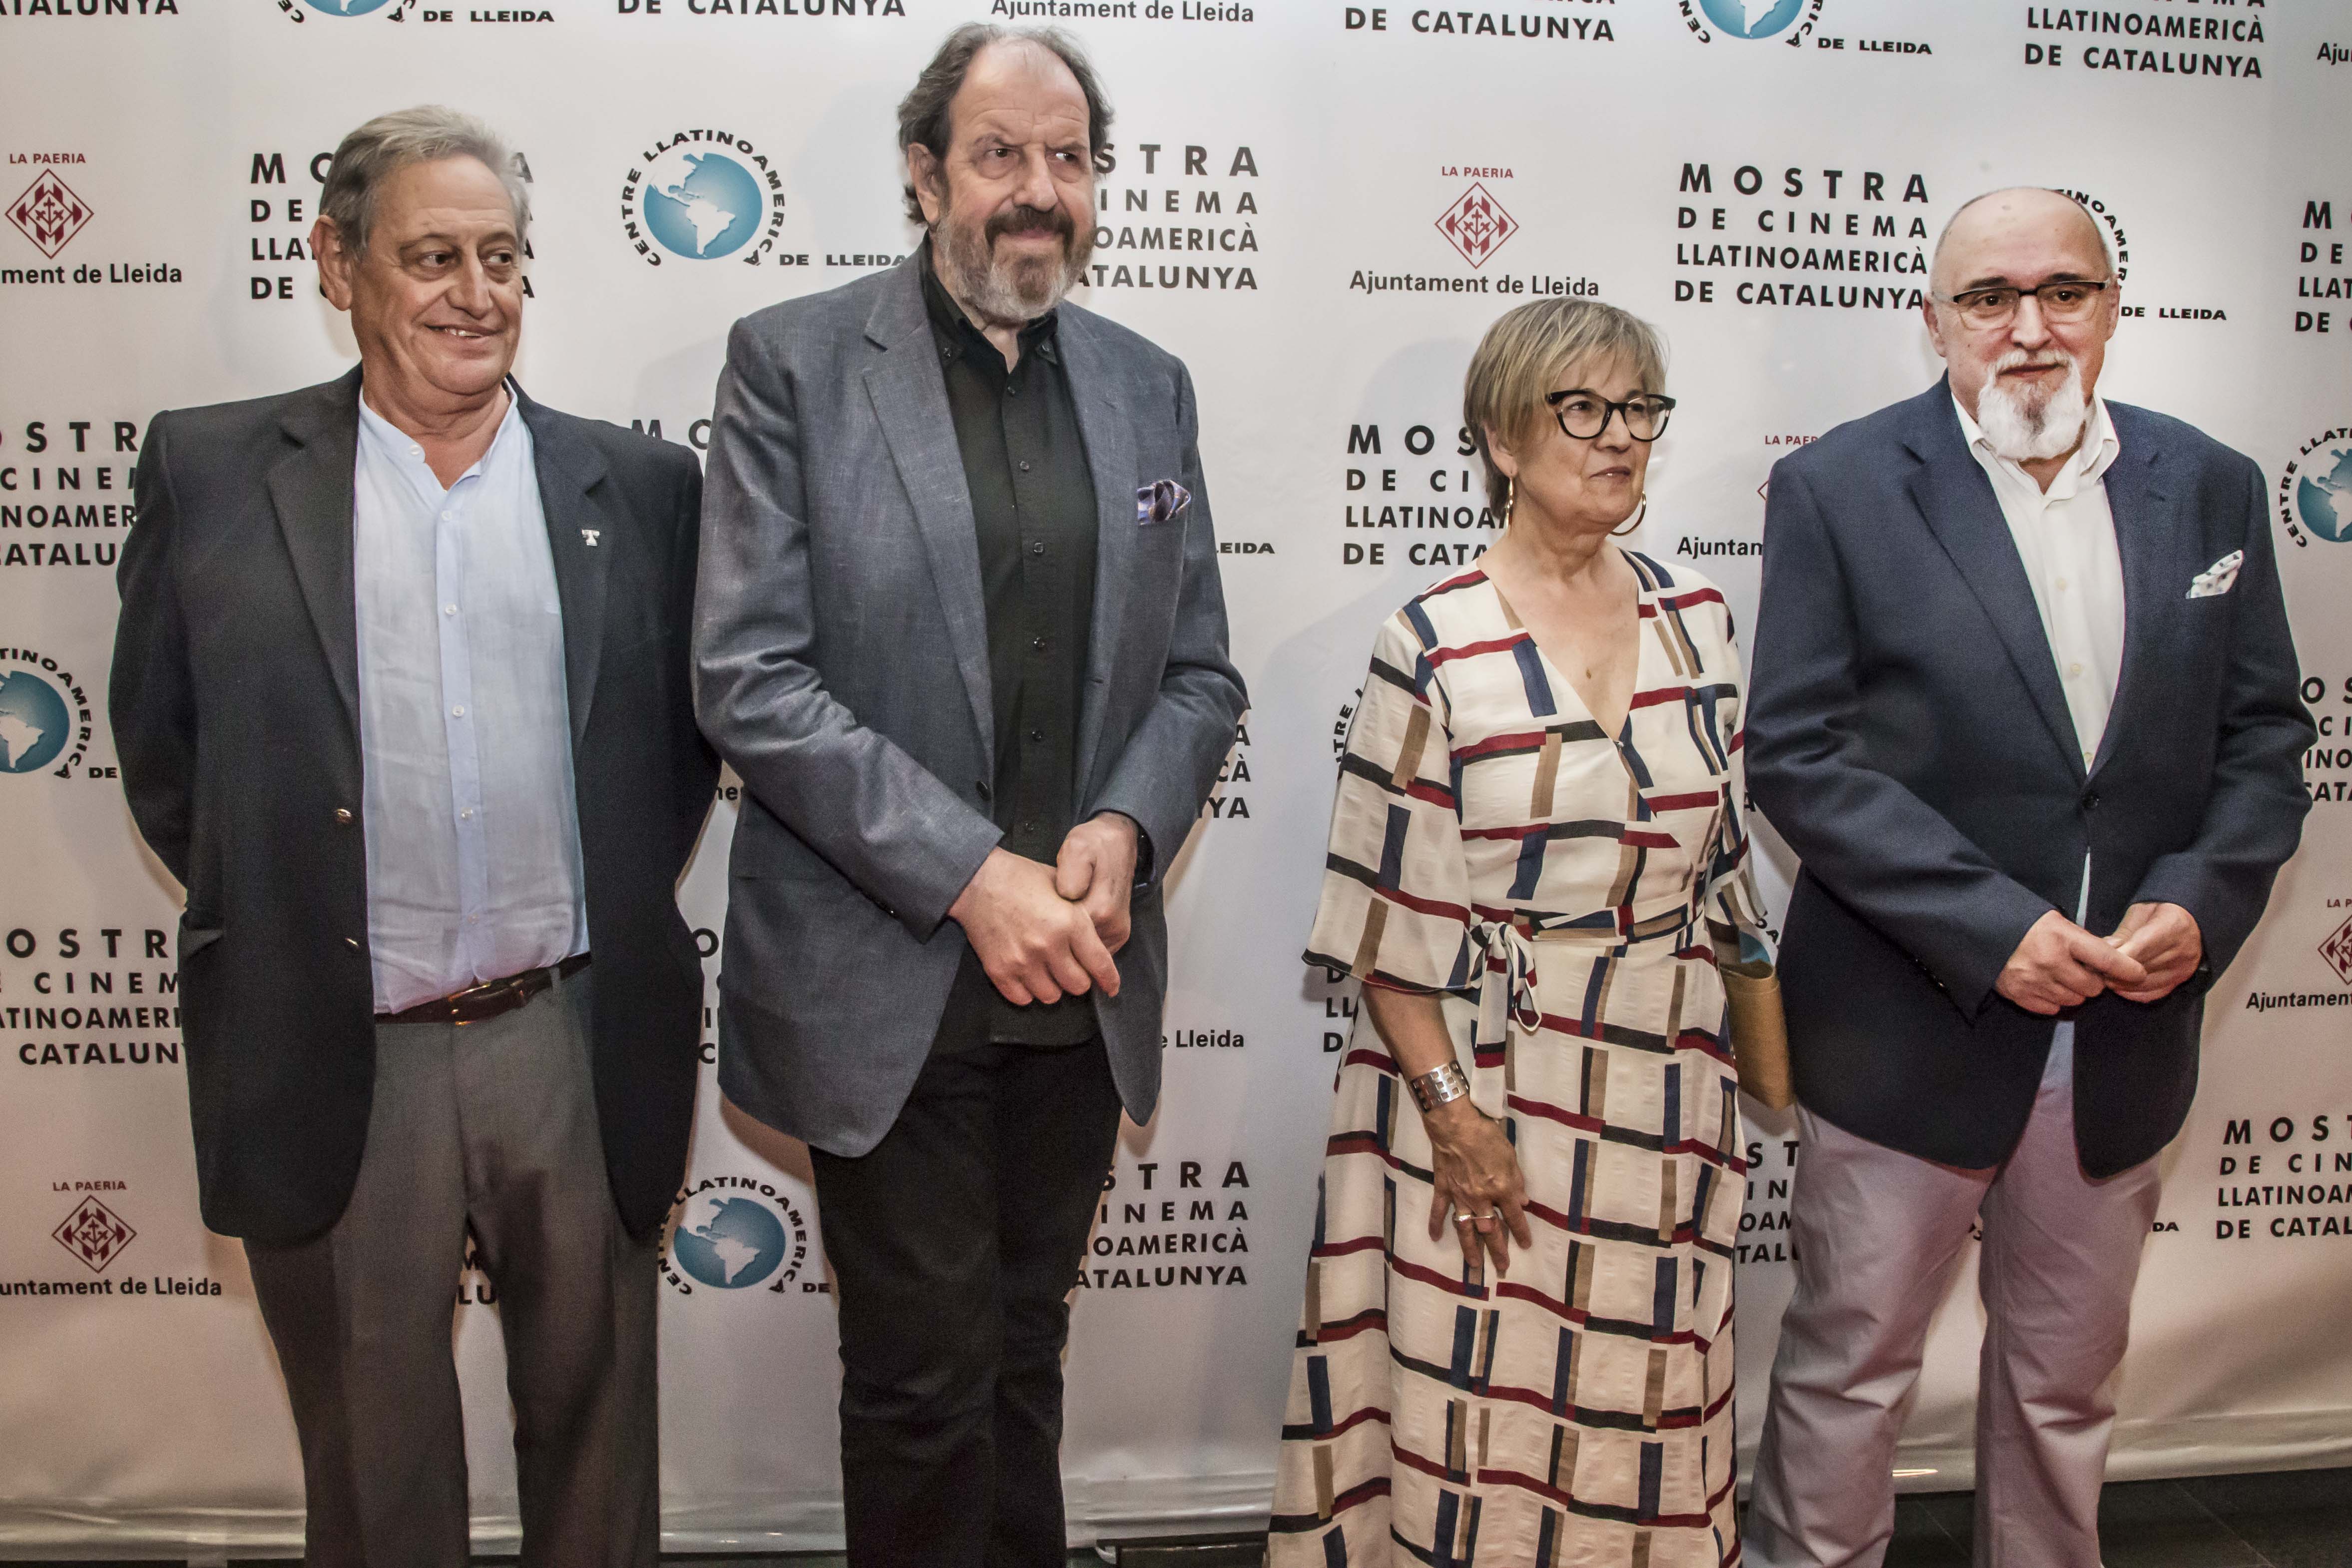 L’actor i director molletà va rebre ahir a la nit el Premi Jordi Dauder 2019 de la 25a Mostra de Cinema Llatinoamericà de Catalunya que se celebra a Lleida del 6 al 13 de juny.